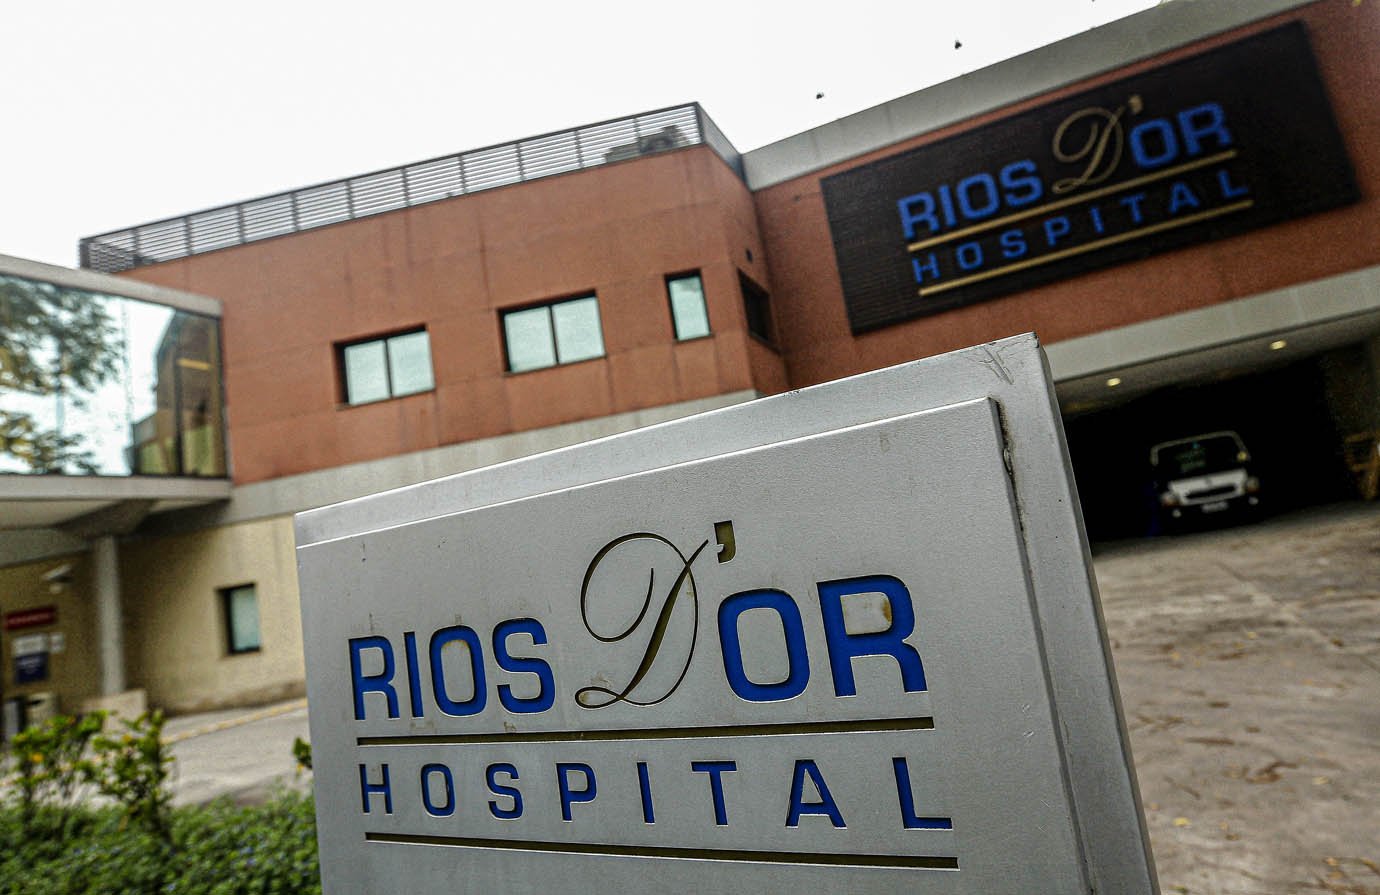 A placa do Hospital Rios D'or, que faz parte da rede de hospitais Rede D'Or São Luiz SA, está retratada em sua entrada no Rio de Janeiro, Brasil, 2 de dezembro de 2015. REUTERS / Ricardo Moraes